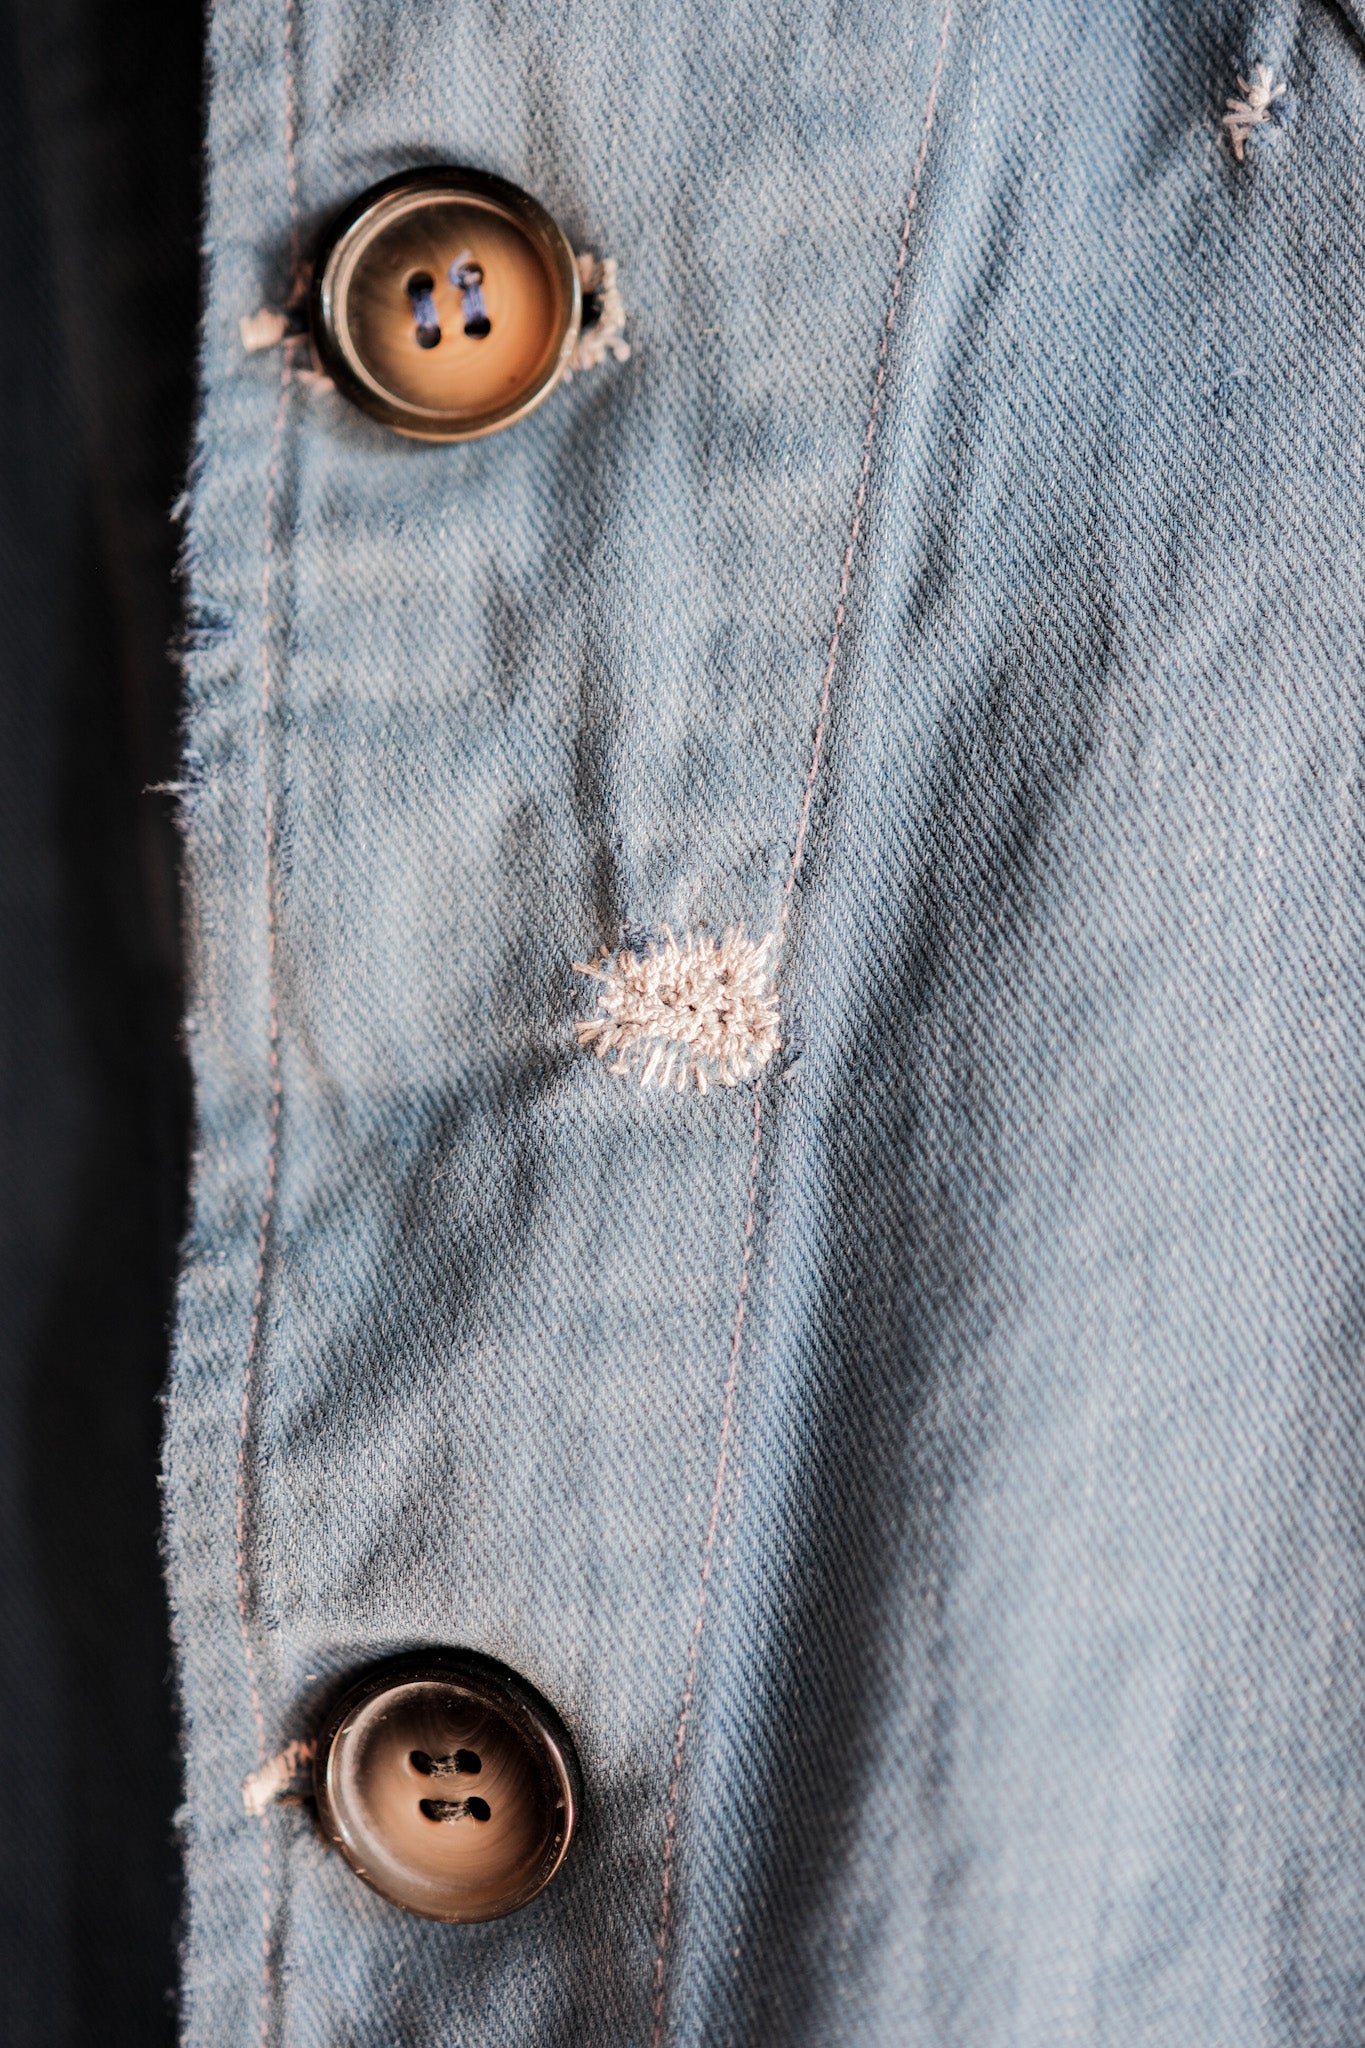 [~ 40's] French Vintage Indigo Cotton Twil Lapel Work Jacket